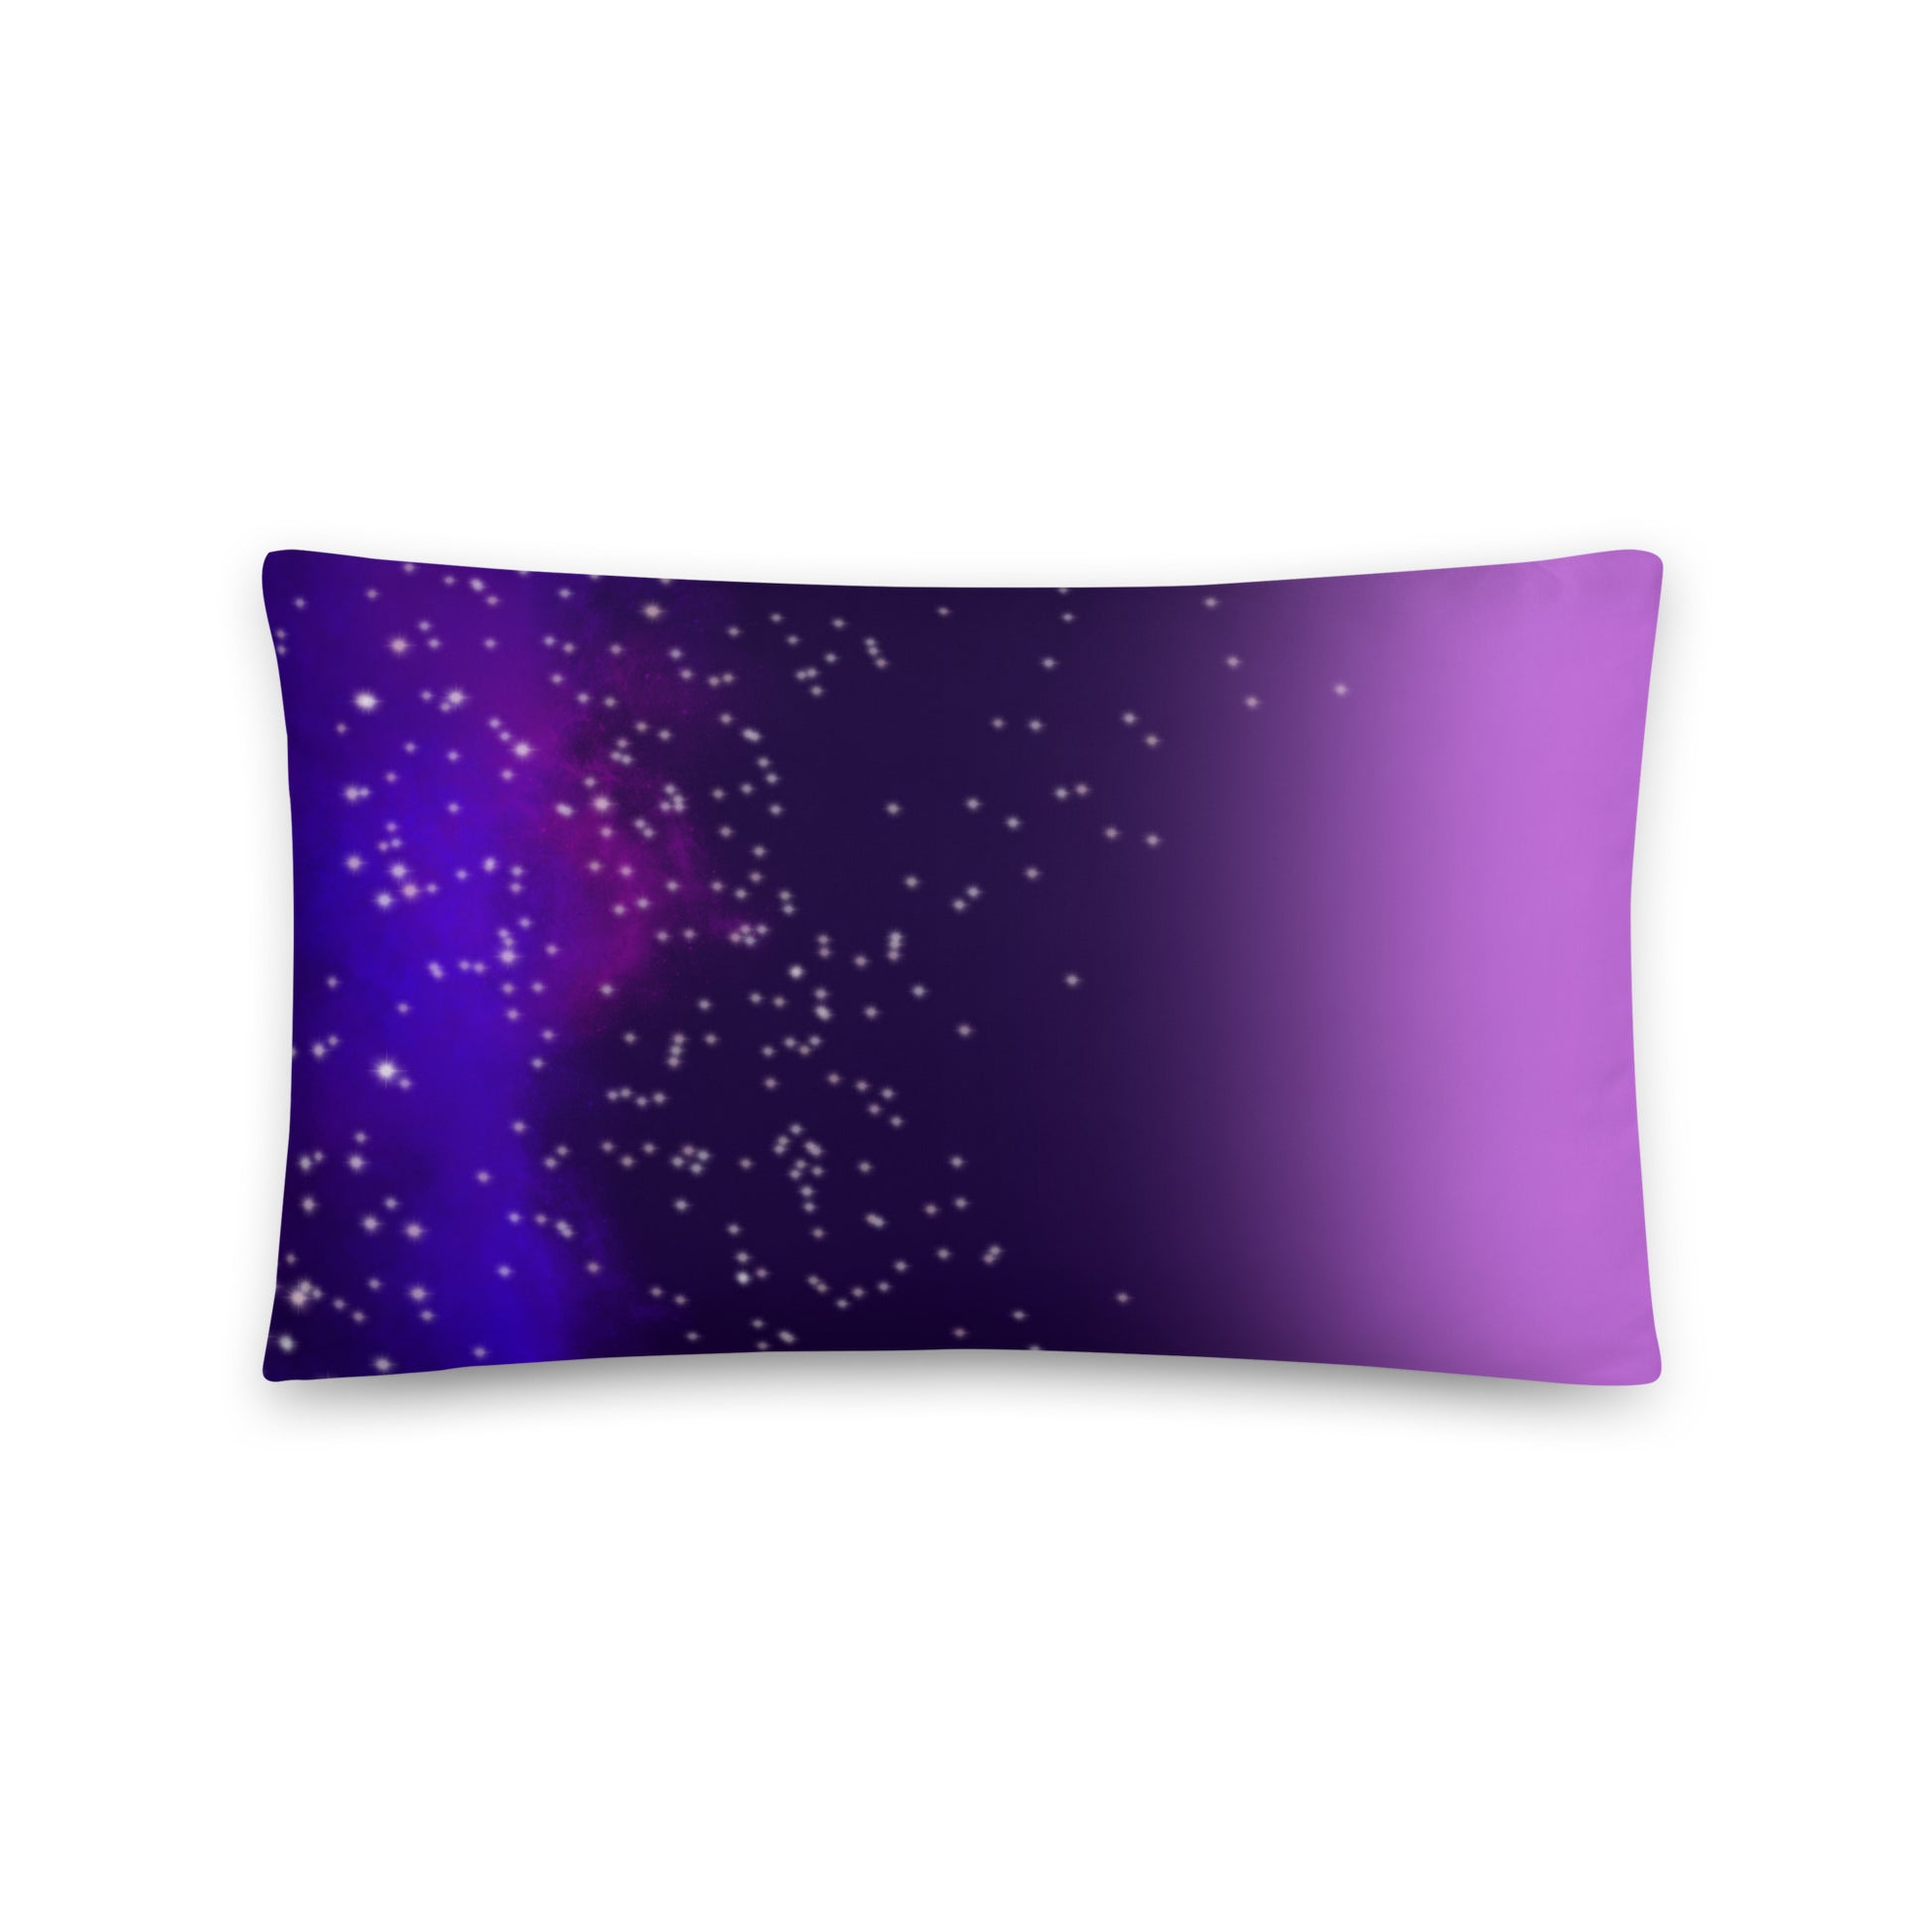 The Purple® Pillow: Official Kickstarter Video 